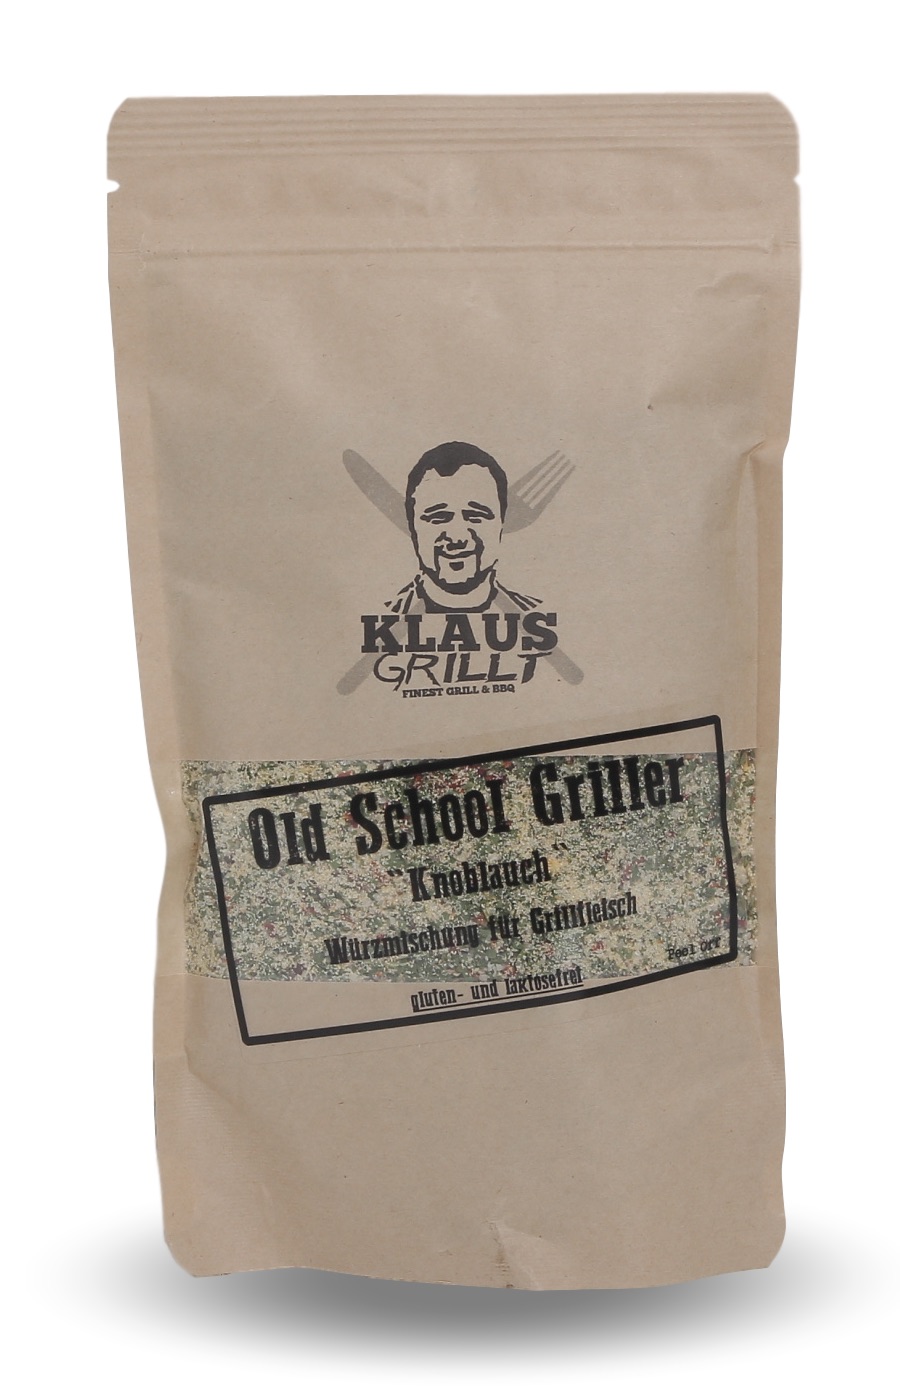 Klaus grillt Old School Griller Knoblauch 250 g Beutel